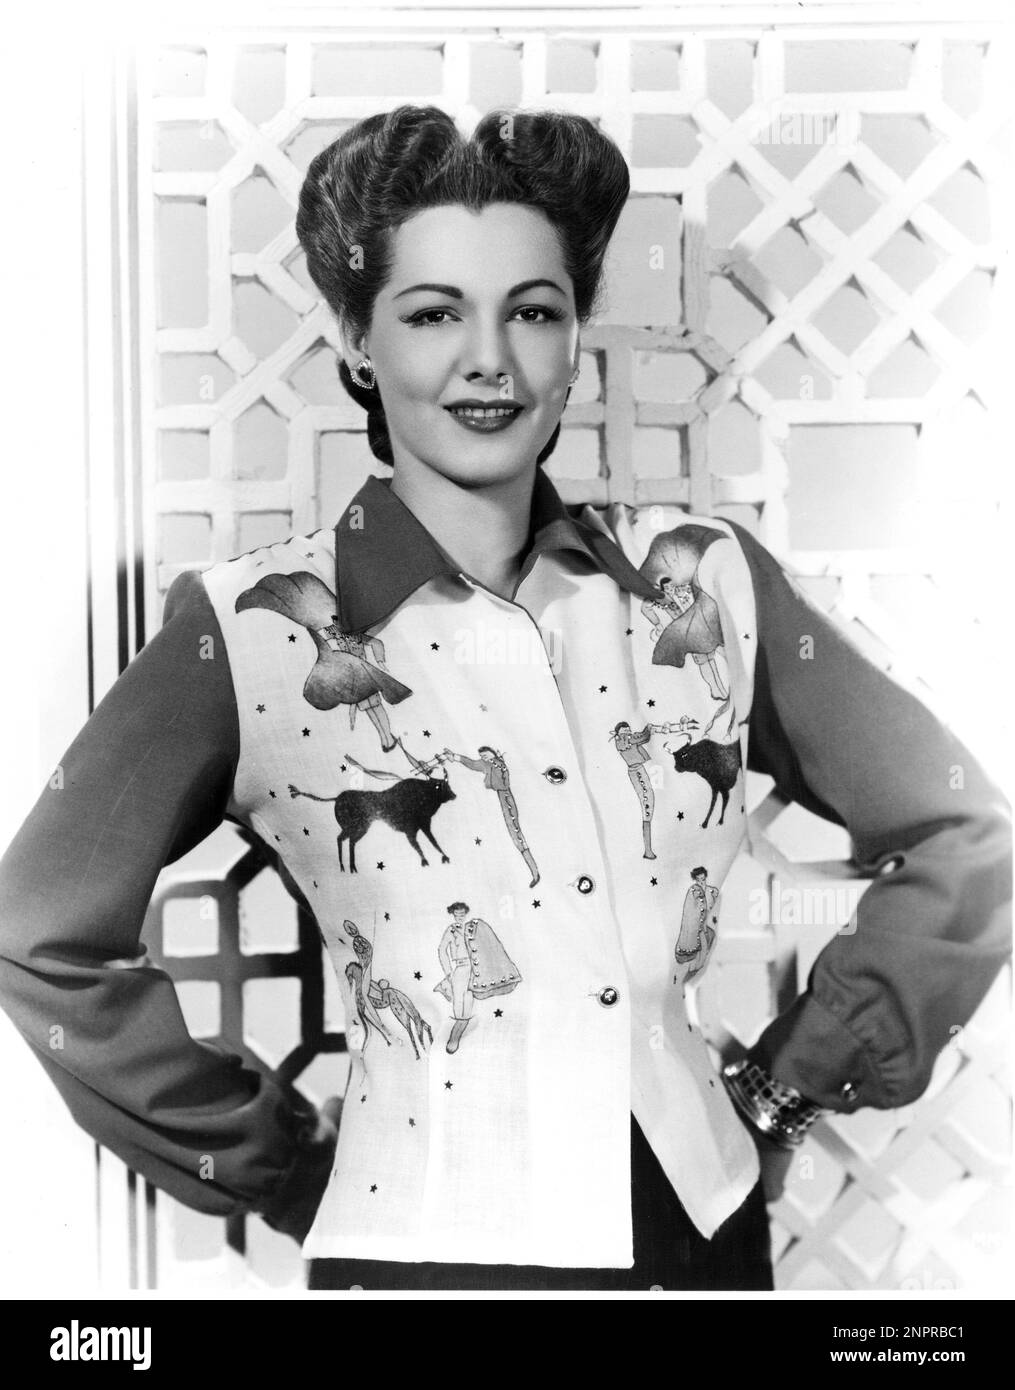 1944 ca. , USA : la celebre attrice MARIA MONTEZ ( 1917 - 1951 ) in una publicity ancora . - FILM - CINEMA - serpente - serpent - DIVA - DIVINA - MODA - ANNI QUARANTA - anni 40 - '40 - camicia - camicia - torero - corrida - orecchini - orecchino - cuore - clip - orecchini - gioielli - gioviello - gioielli - Sorriso - sorriso - bracciale - bracciale - bracciale - bracciale --- Archivio GBB Foto Stock